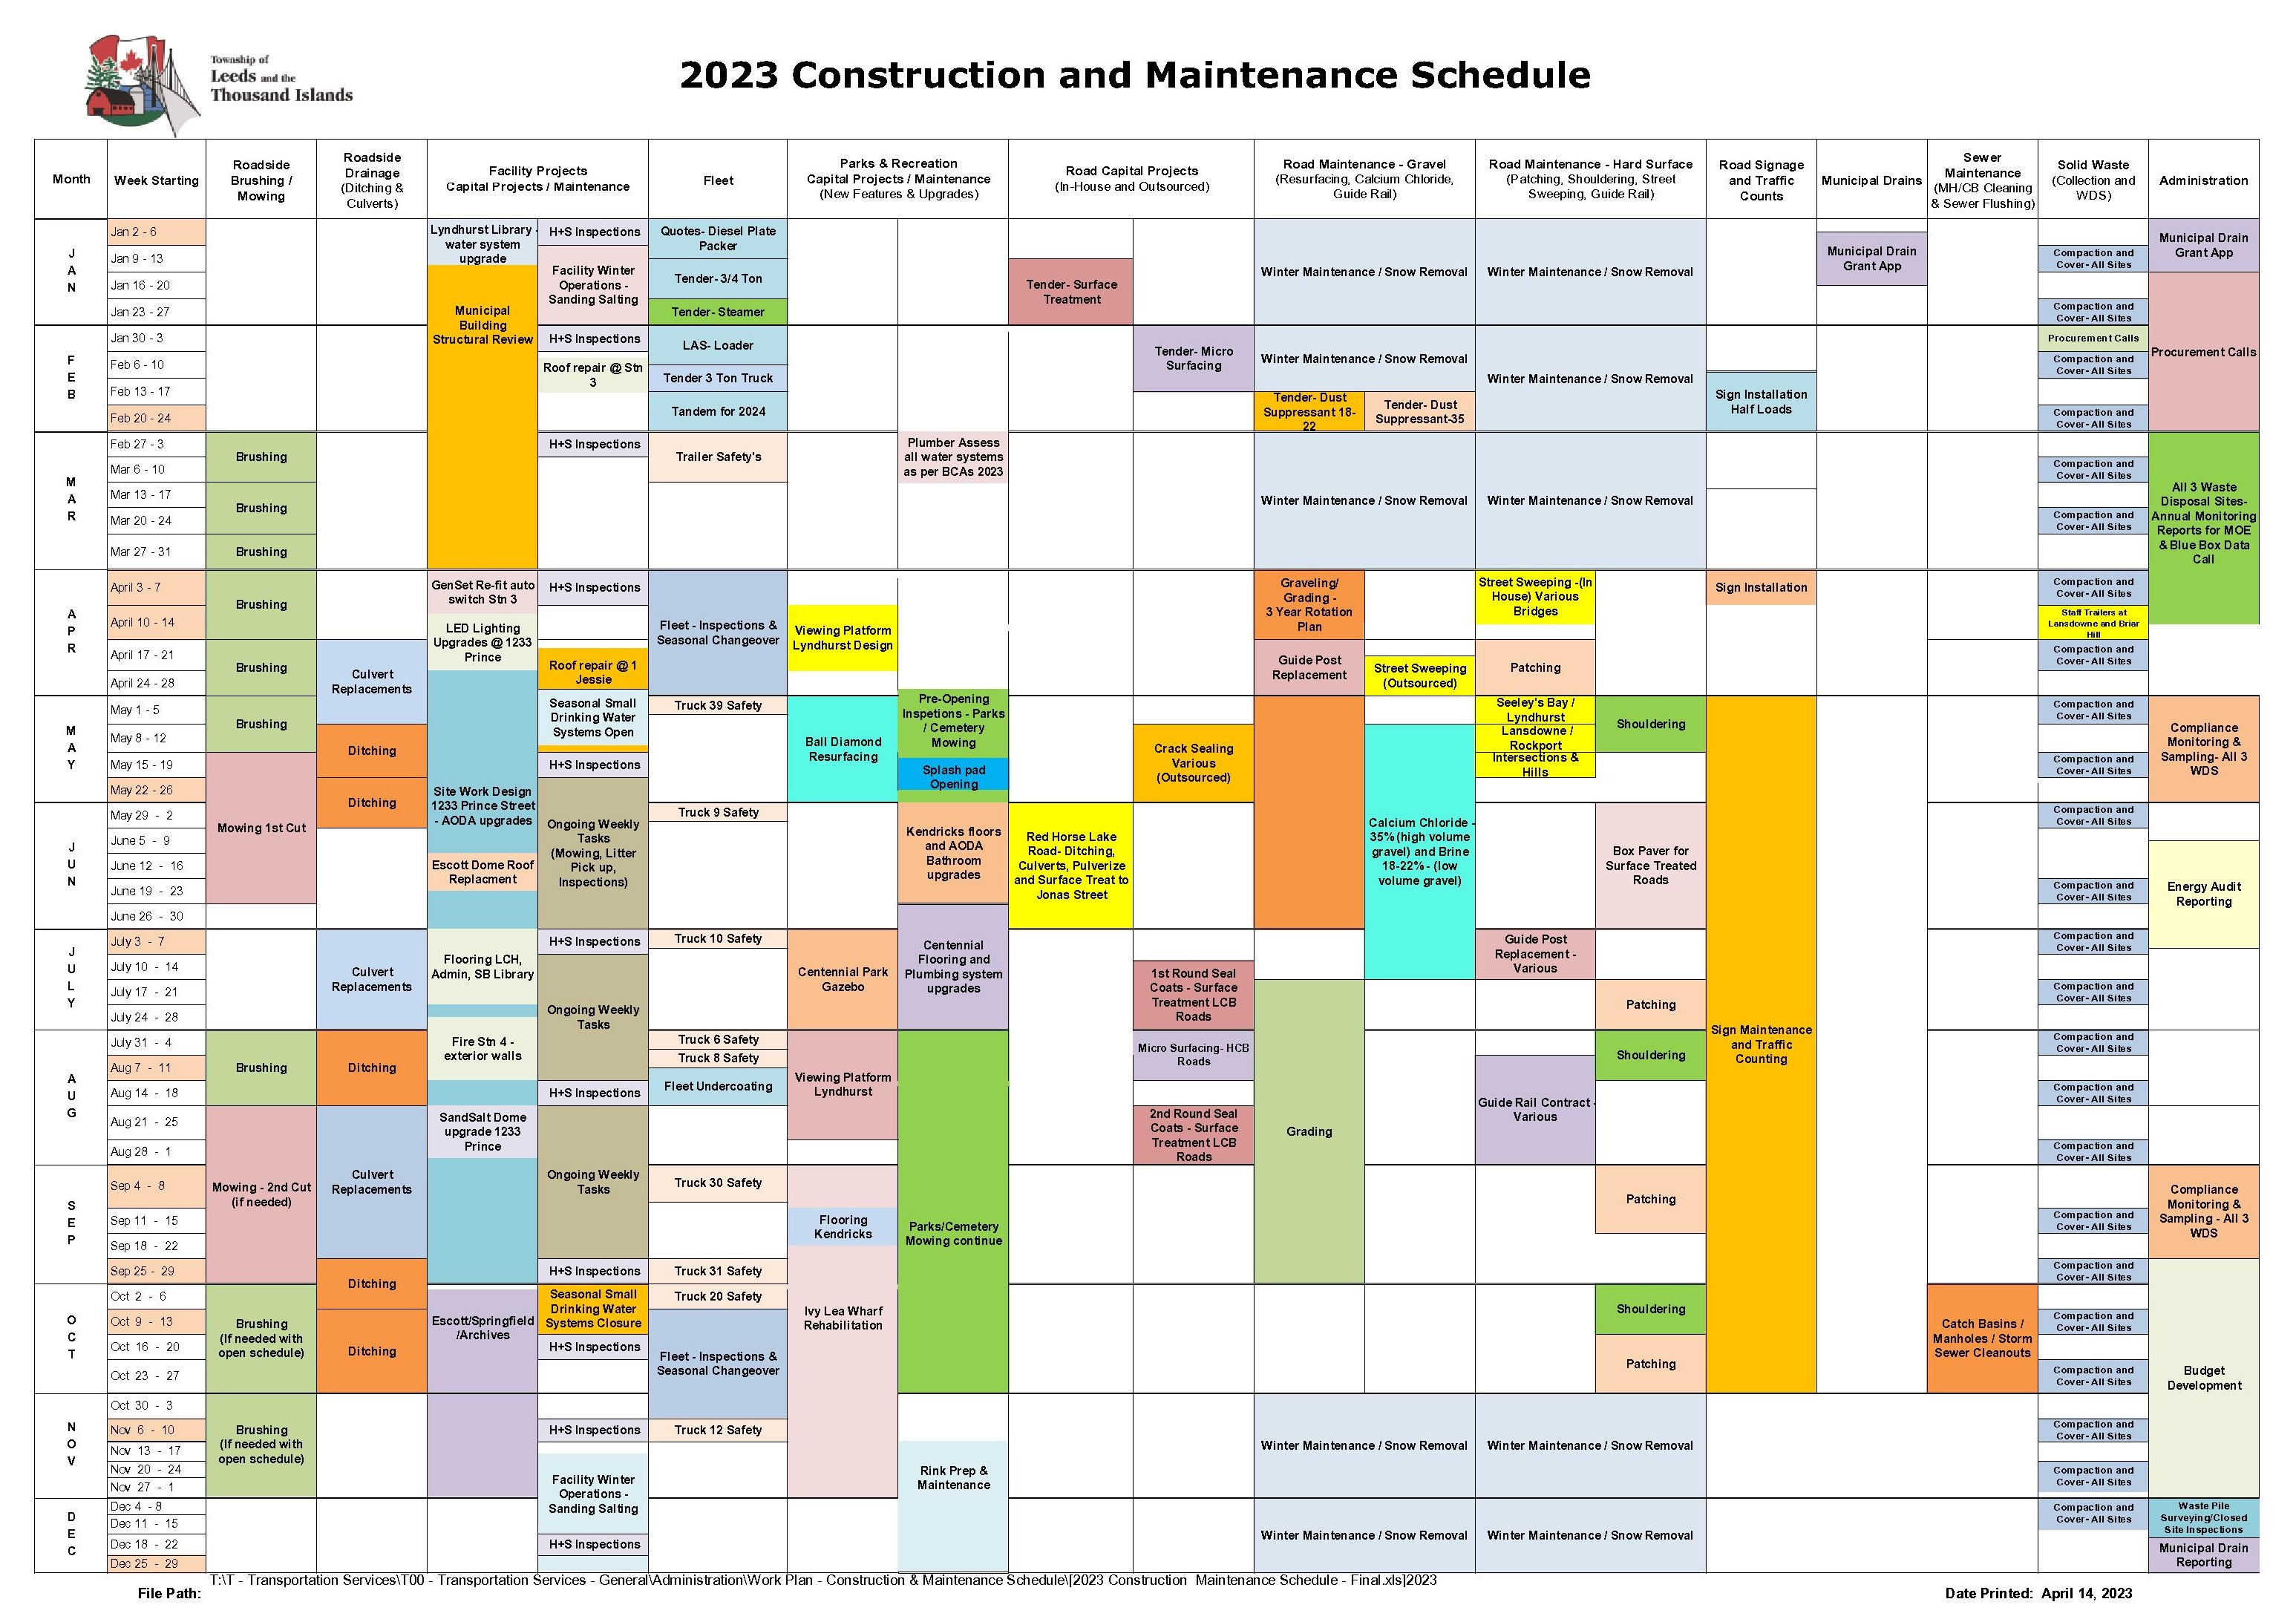 calendar of activities